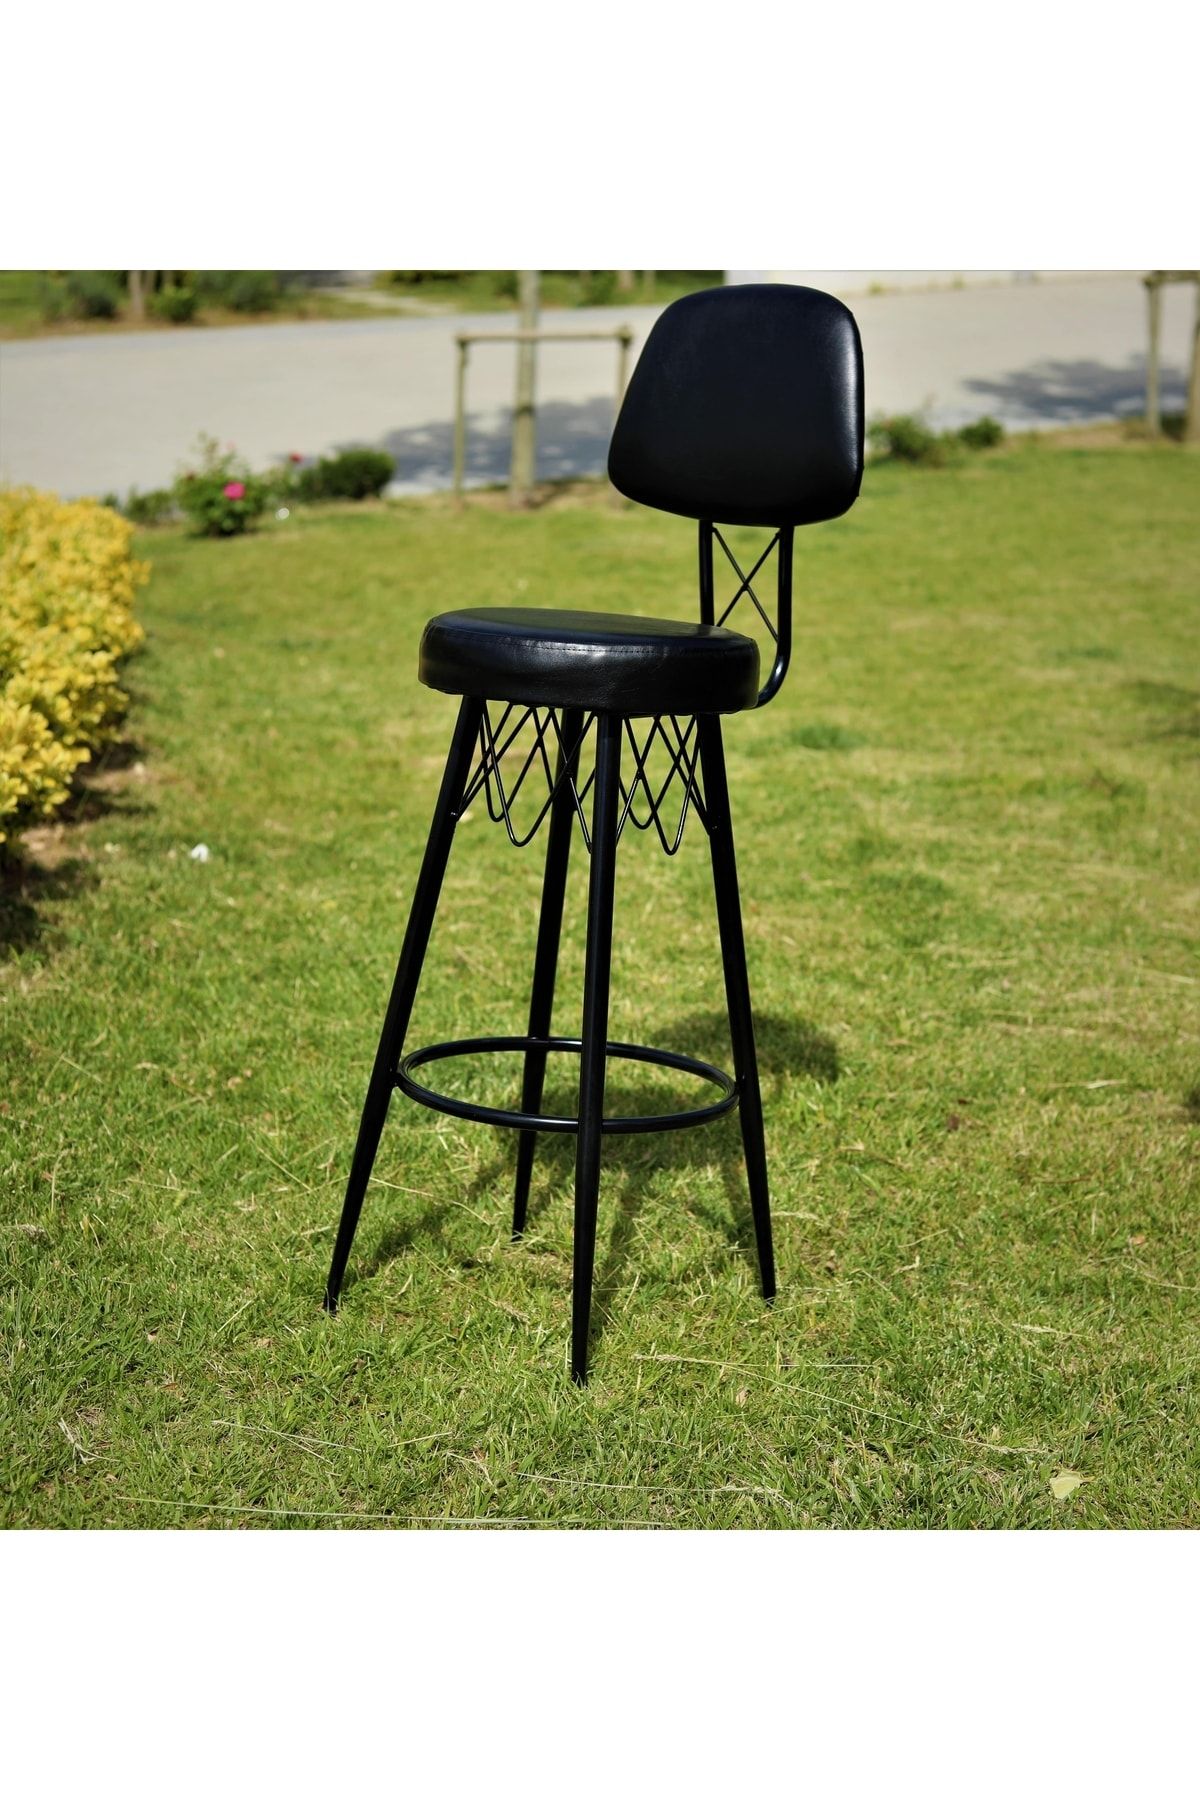 J&S QUALİTY Siyah Mutfak Bahçe Cafe Bar Salon Yemek Masa Konforlu Metal Ayaklı Sandalye 75 cm